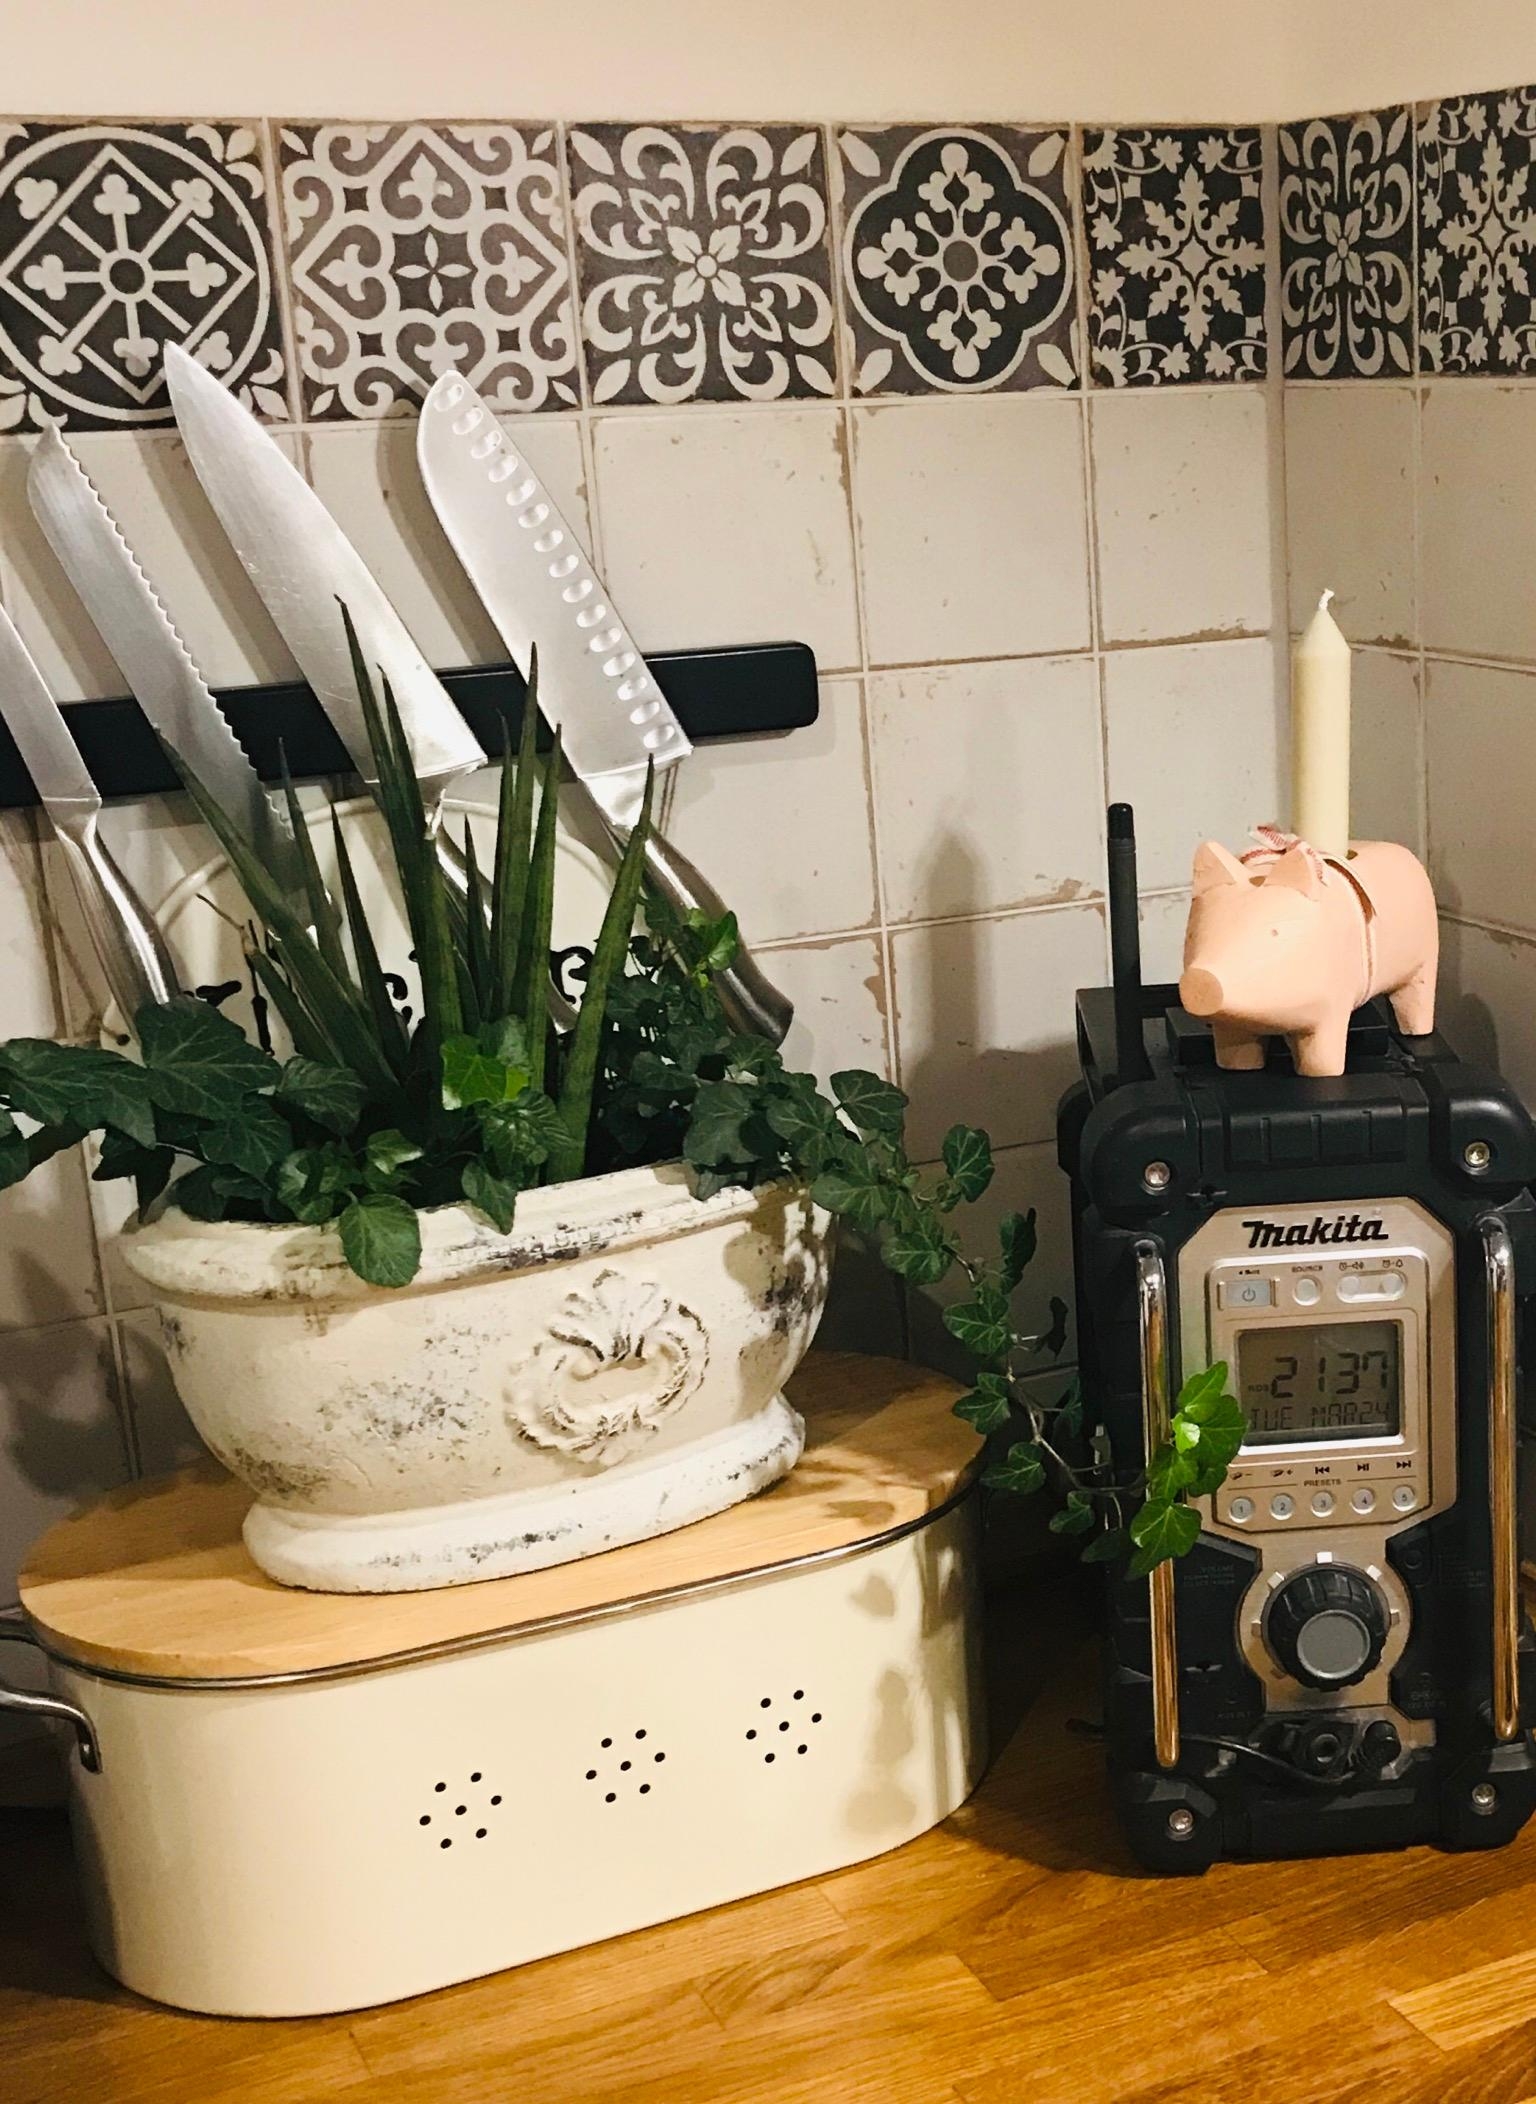 #küchendeko #livingchallenge
Auch in einer Landhausküche, darf das Baustellenradio mit Schweinchen Deko nicht fehlen 😉